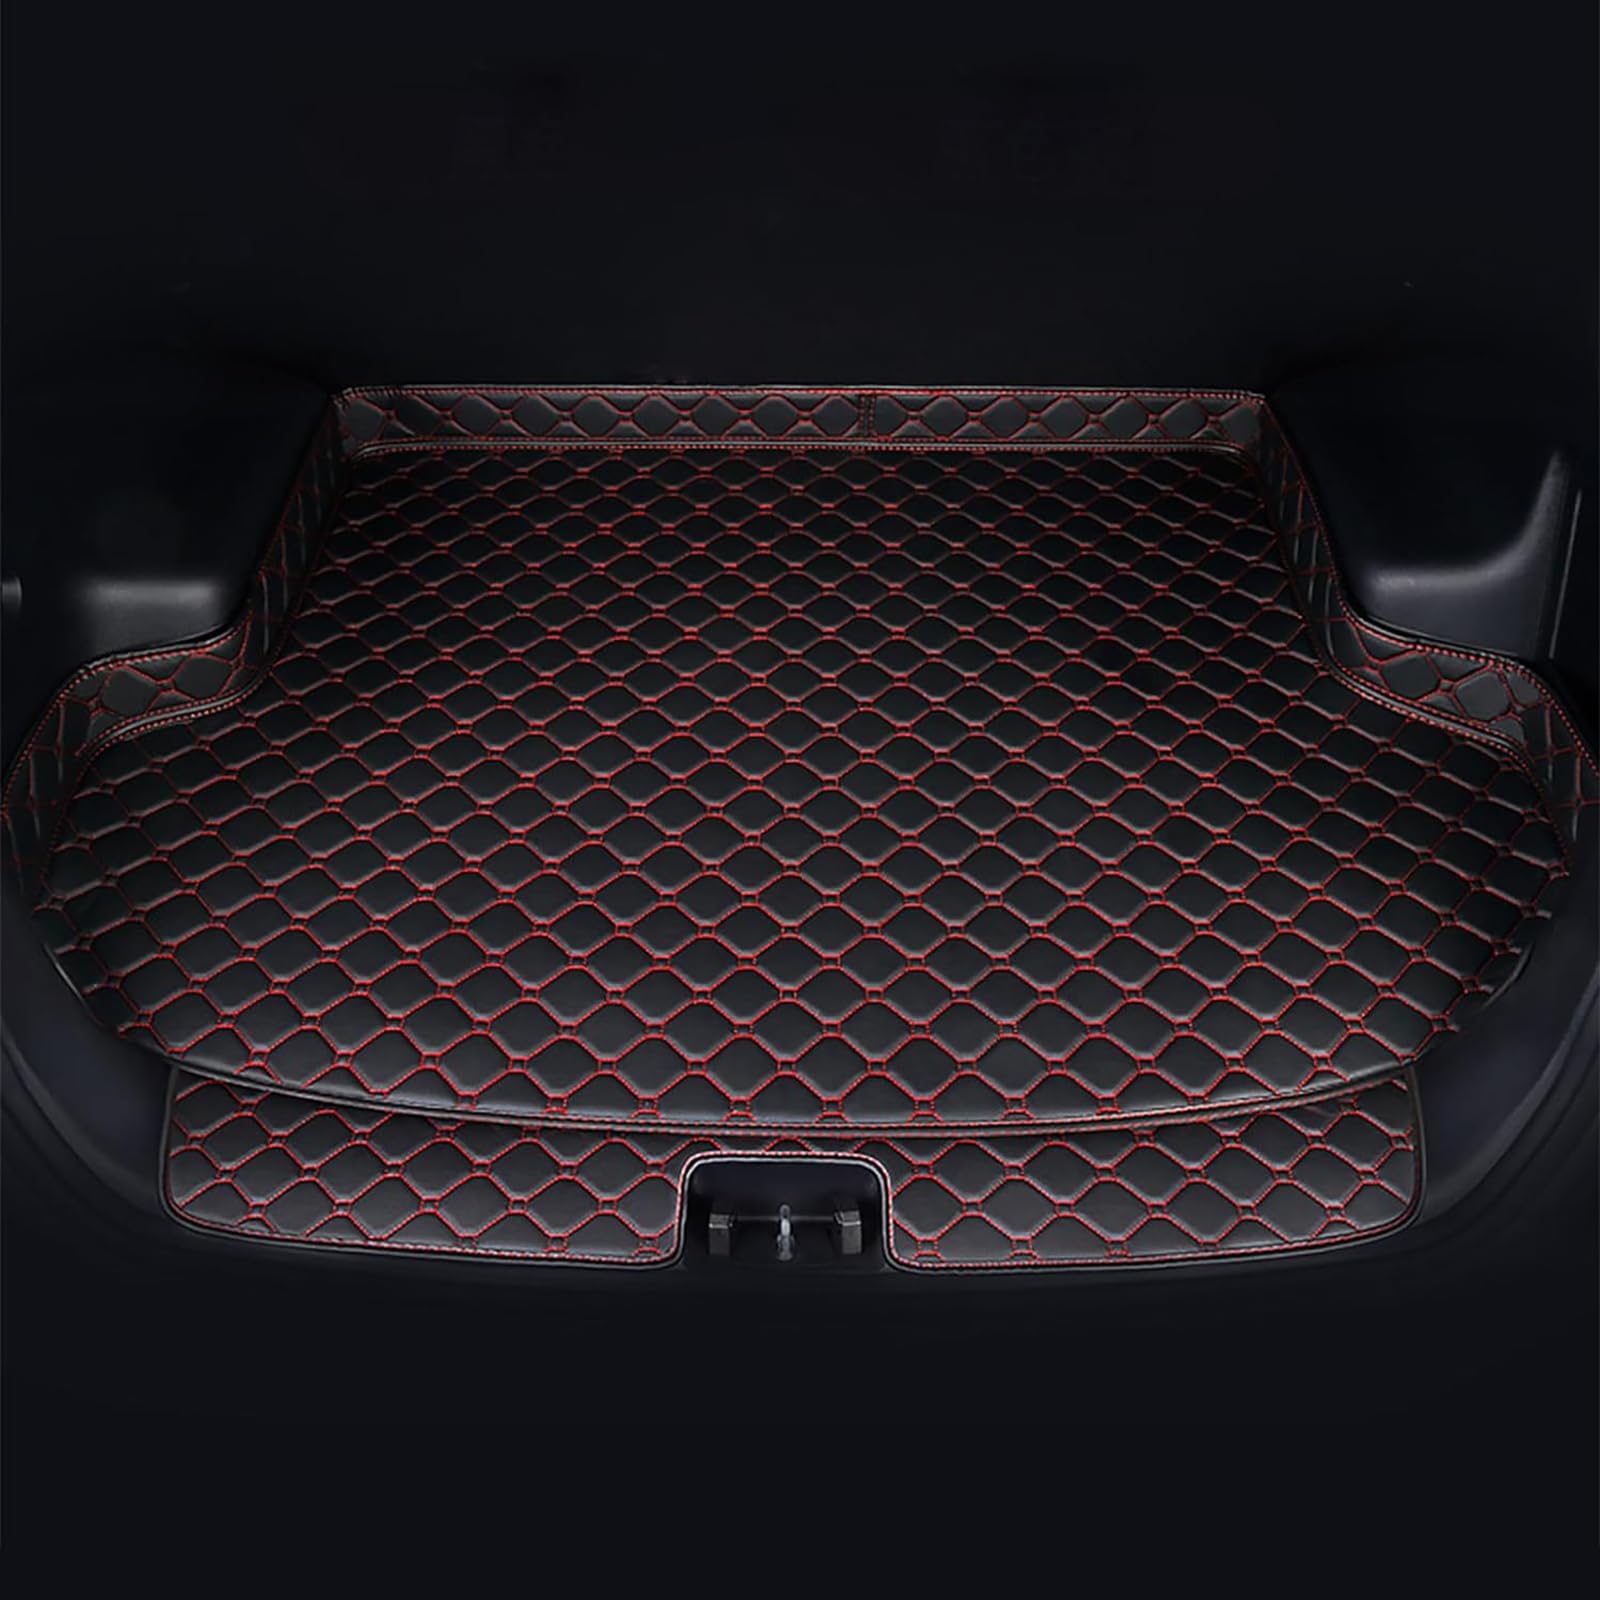 Auto Leder Kofferraummatten Für Lexus RX450H 2007-2015, Wasserdicht rutschfest Kofferraumwanne Allwetter Cargo Teppich Schutzmatte Interieur Zubehör,C/Black-Red von FNUQKREF